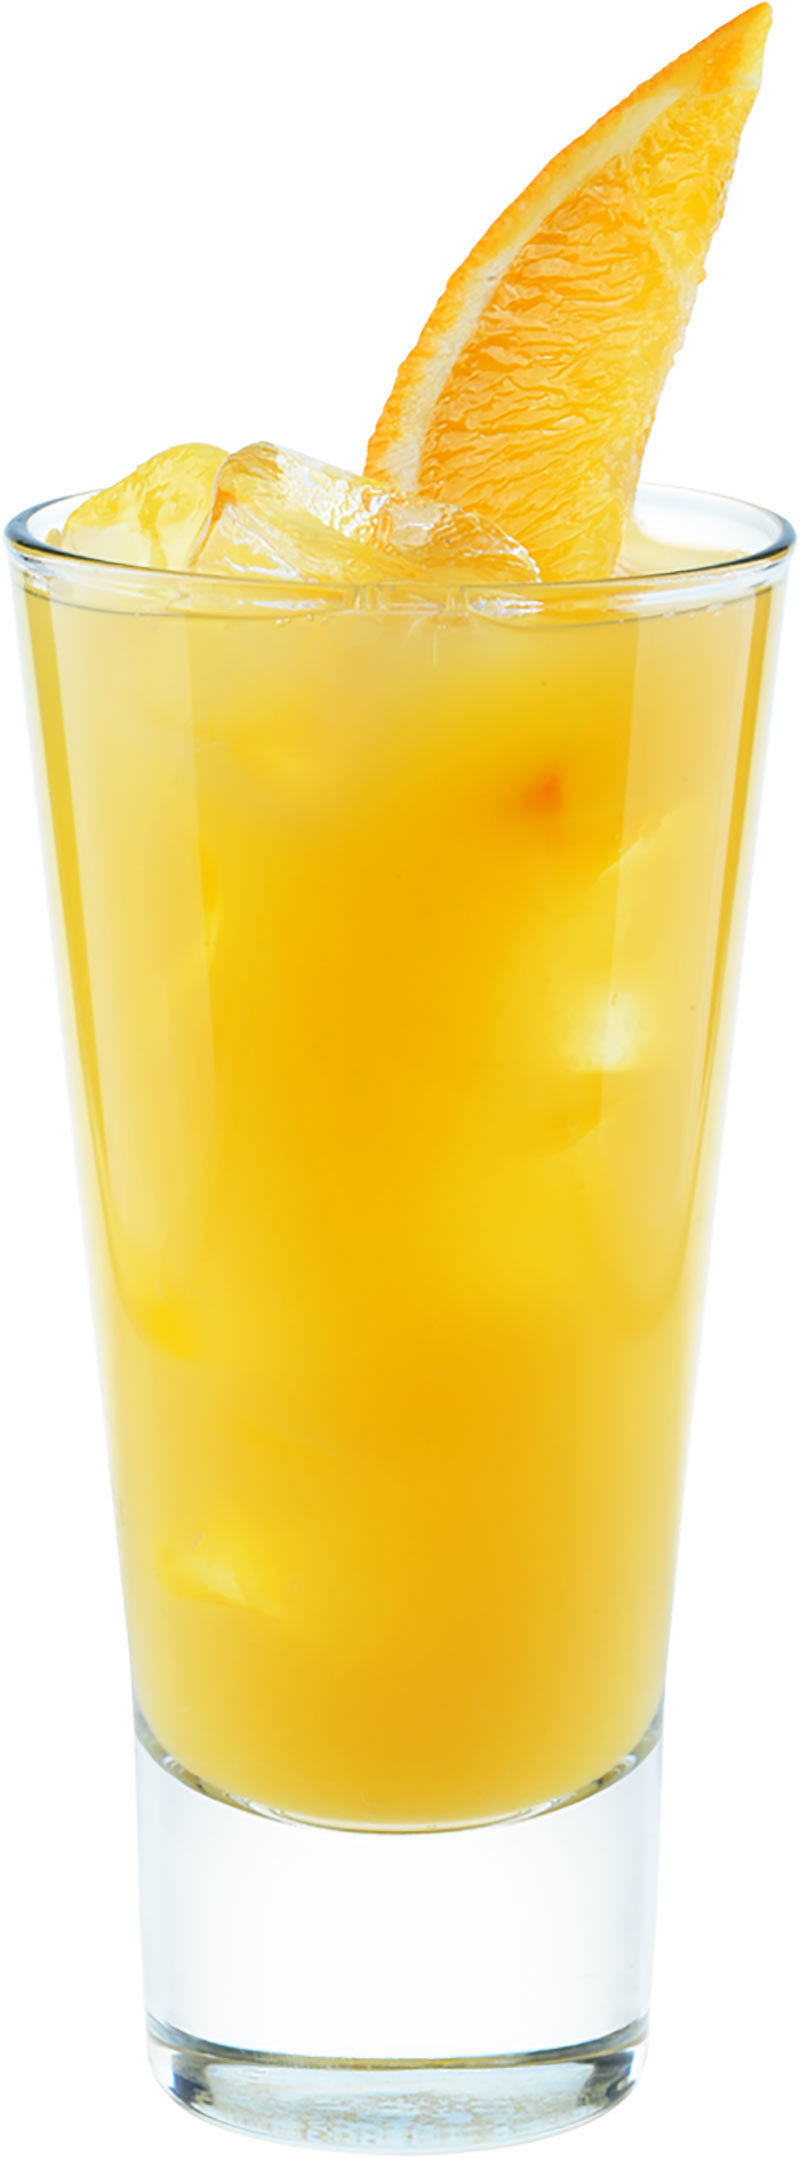 Рецепт коктейля Ром с апельсиновым соком